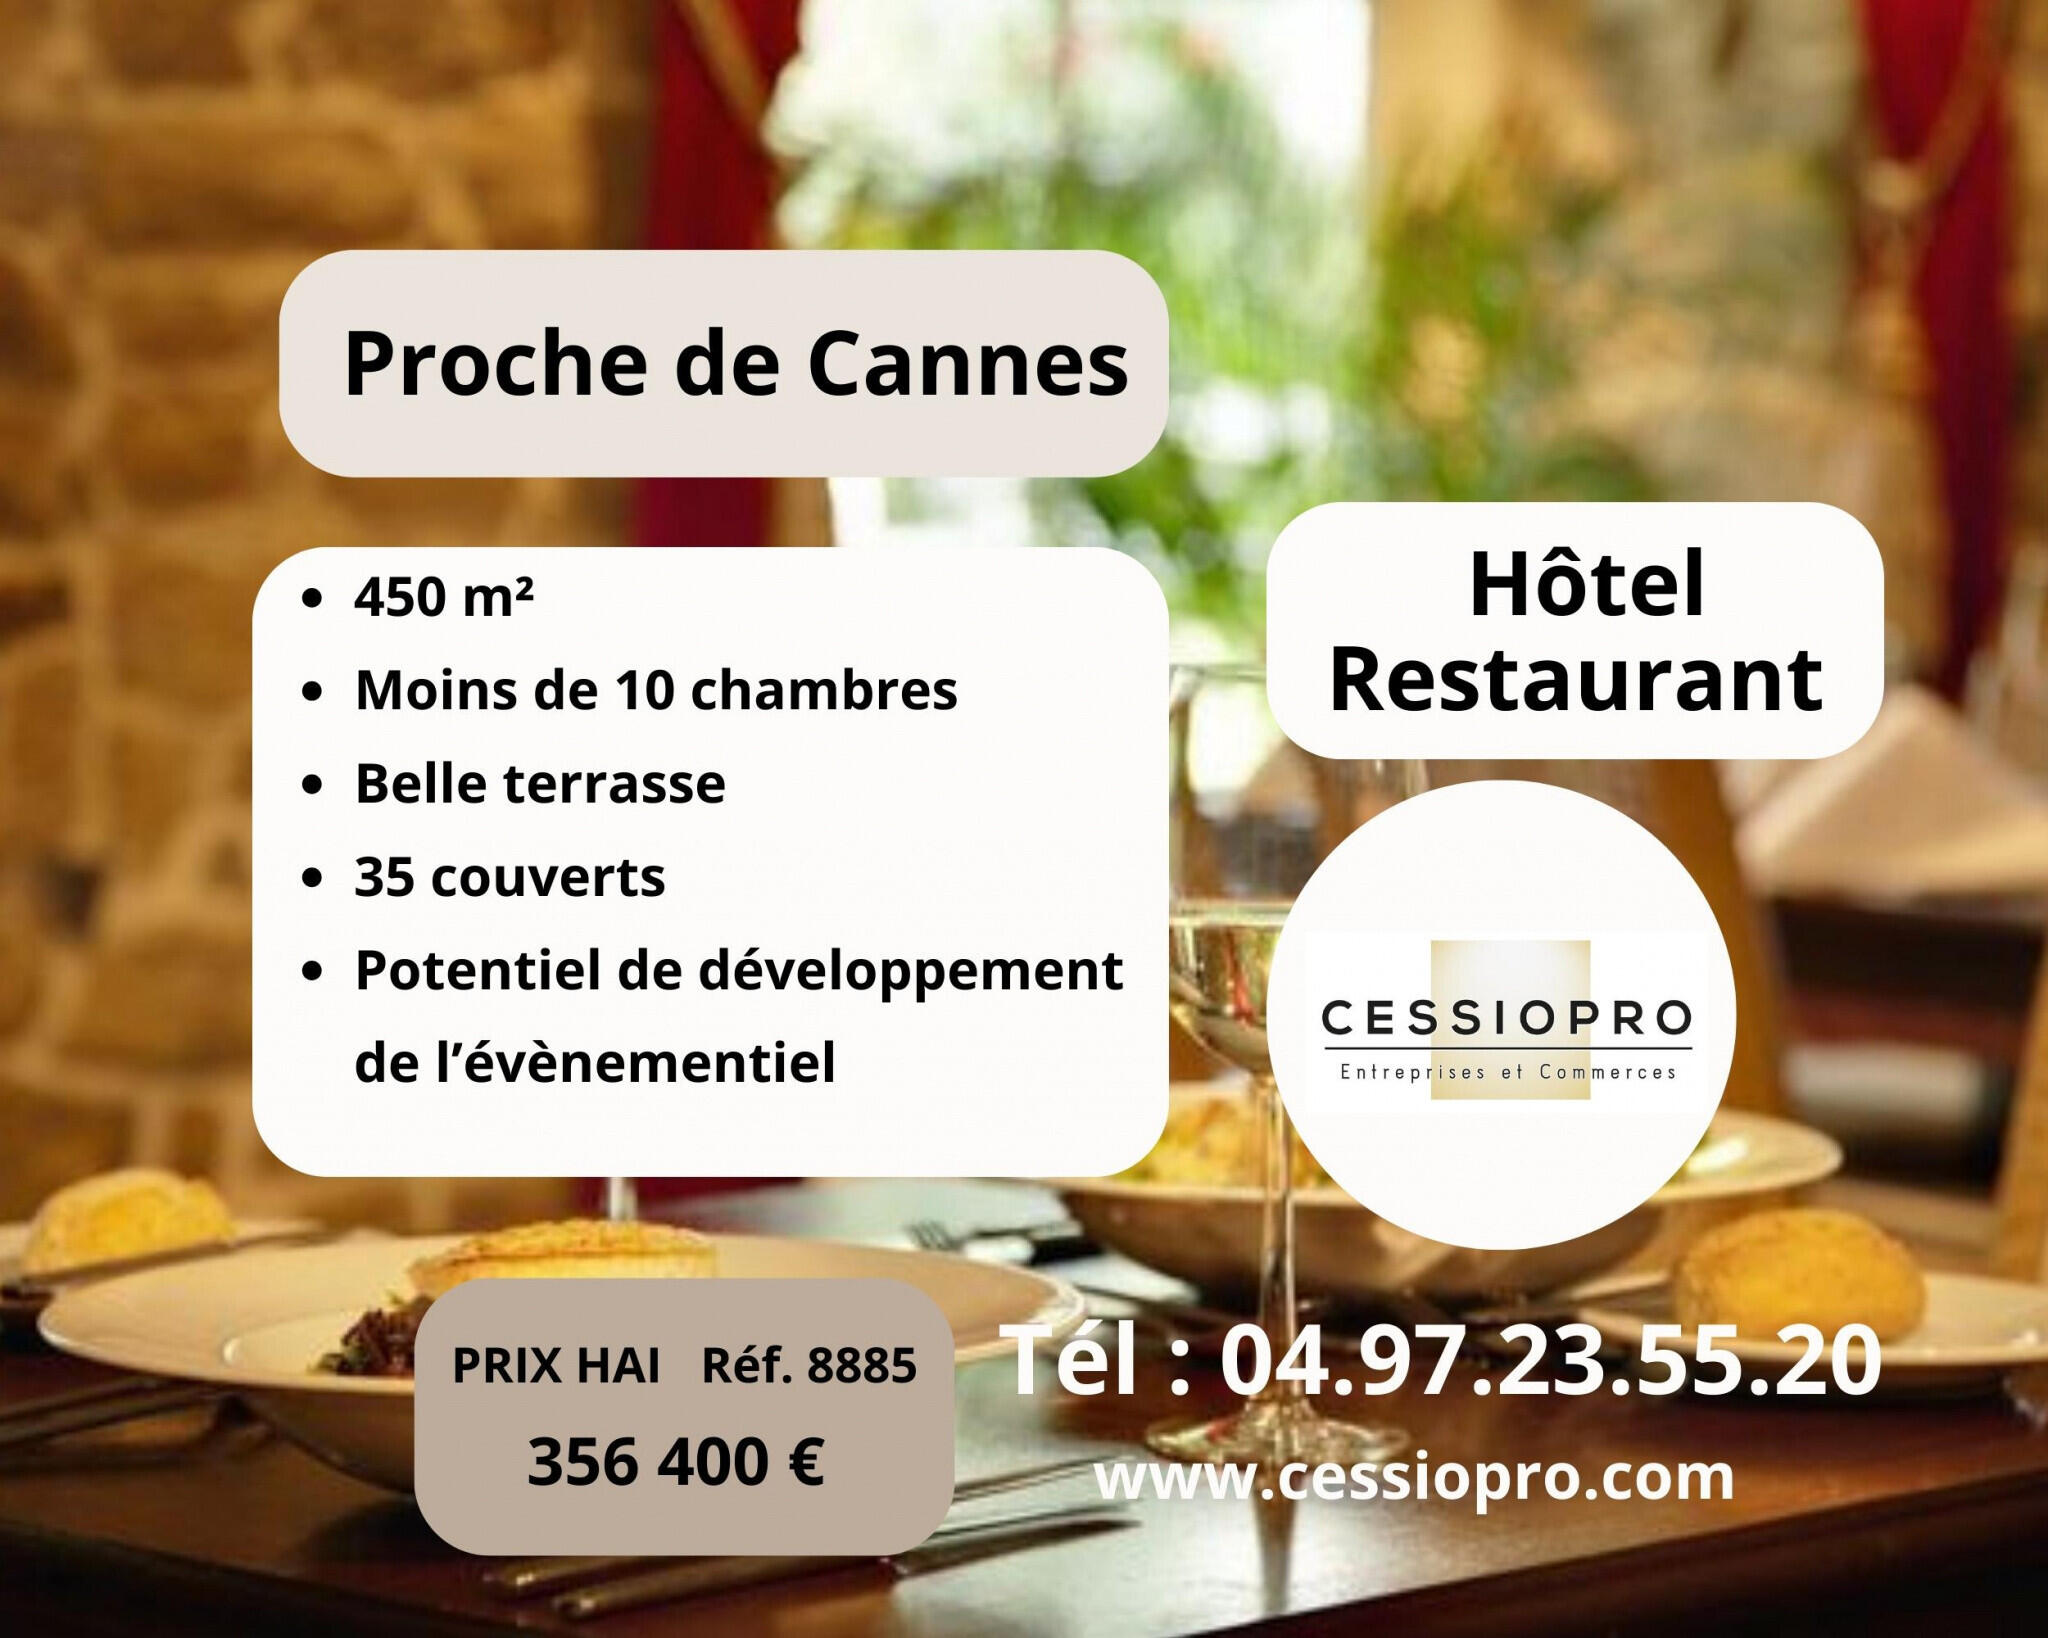 Vente hôtel-restaurant en zc proche de Cannes